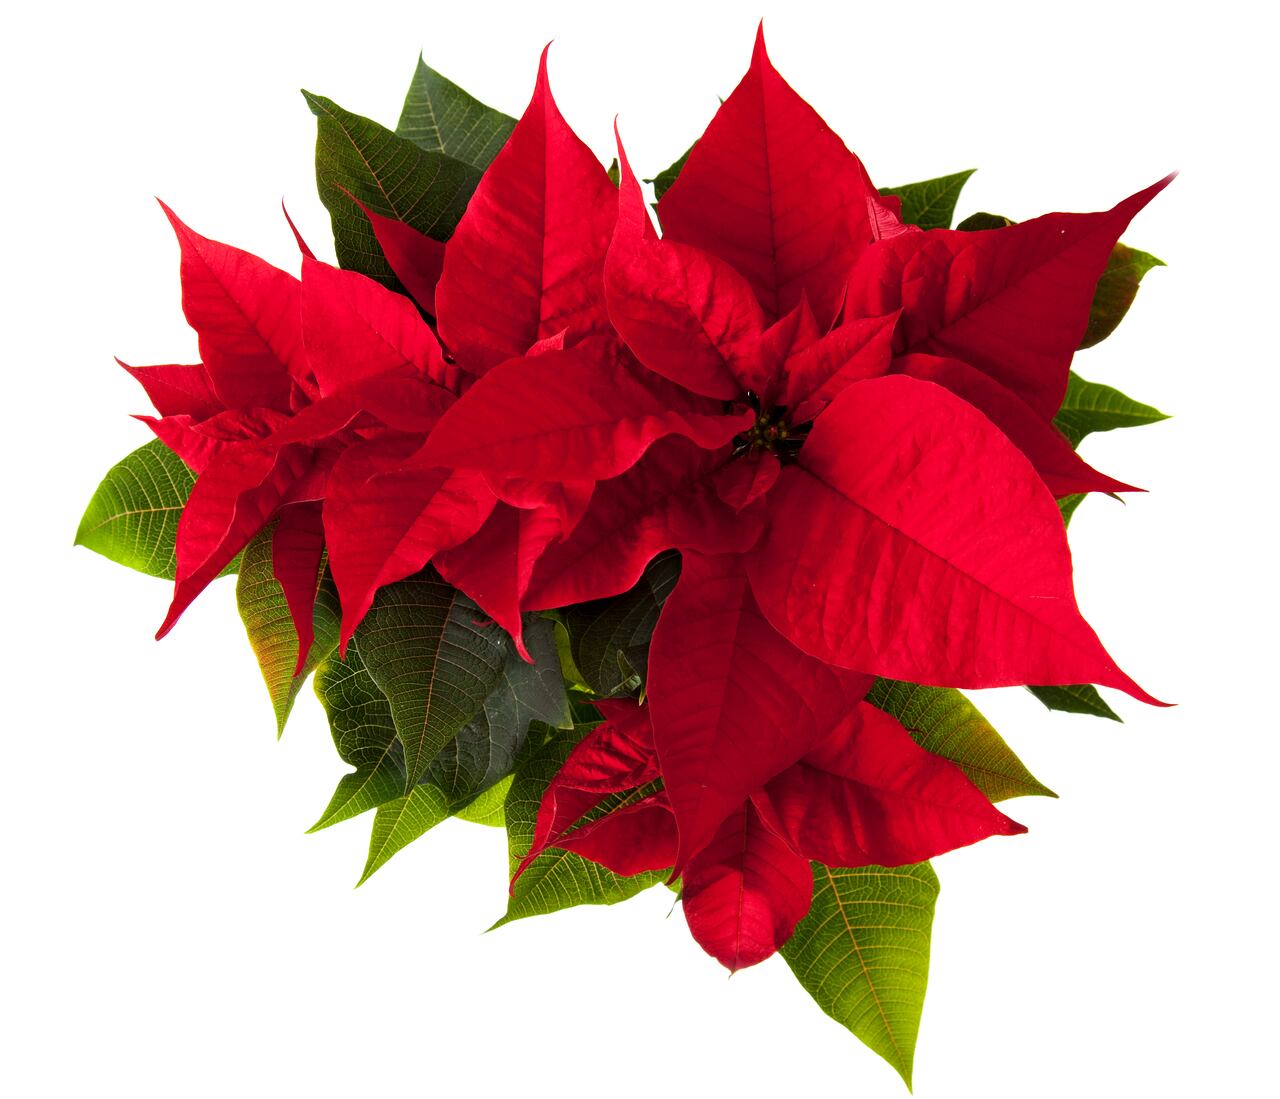 poinsettia - flor de la Navidad - plantas Nochebuena